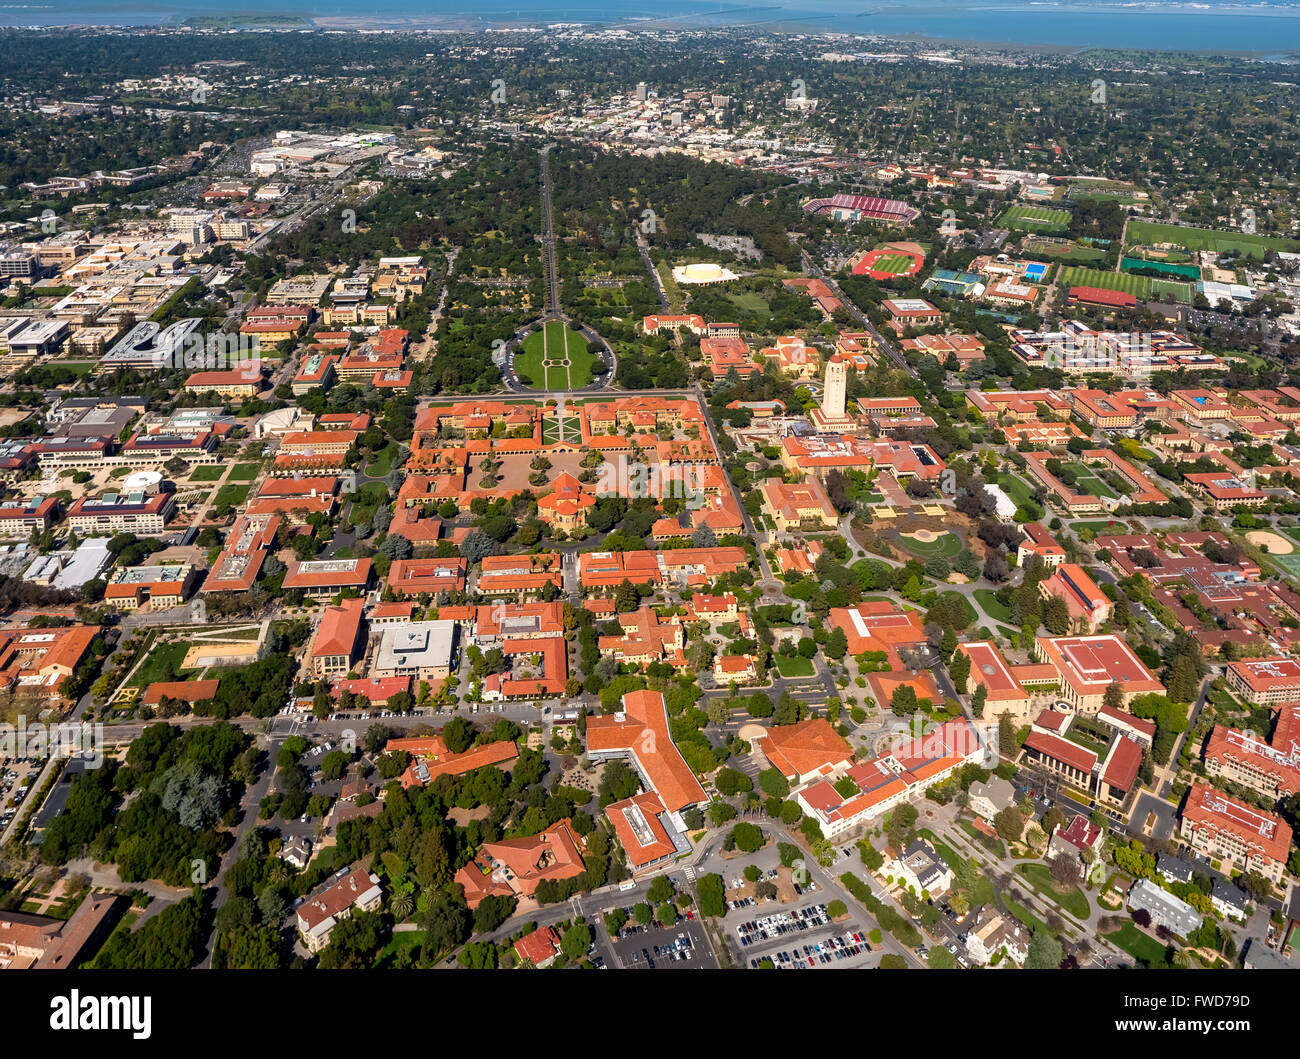 Campus de l'Université de Stanford à Palo Alto en Californie, Hoover Tower, campus, Silicon Valley, Californie, USA, vue aérienne, Banque D'Images